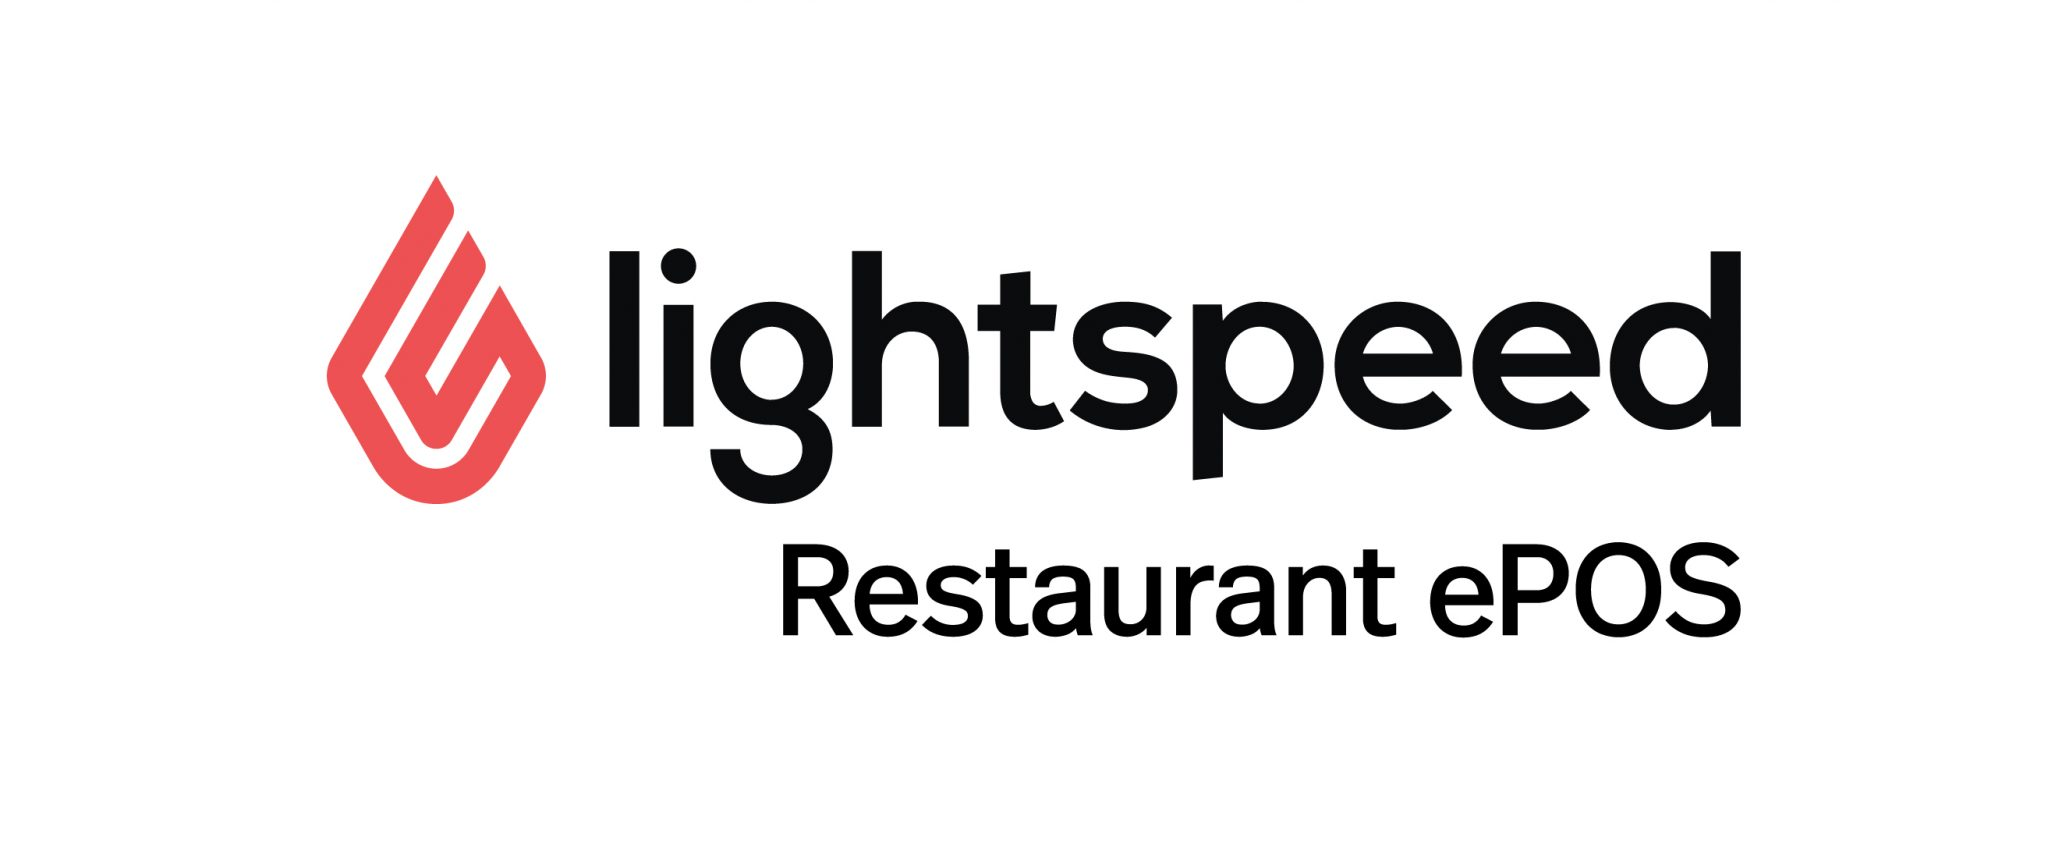 lightspeed restaurant pos logo